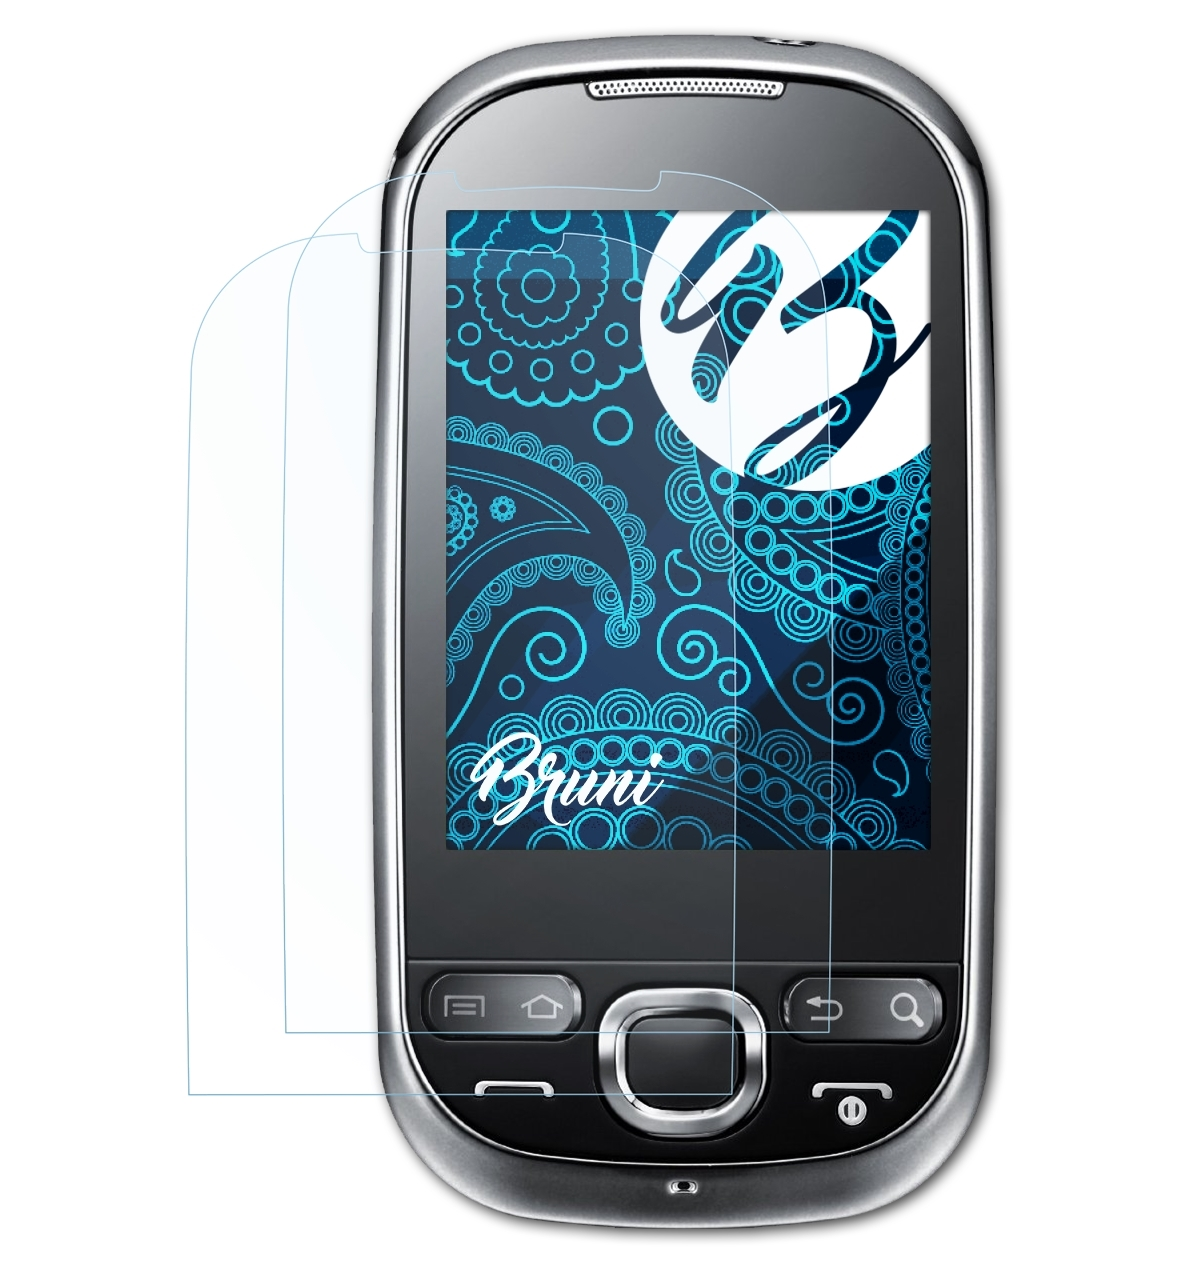 BRUNI 2x Basics-Clear Schutzfolie(für 550 Samsung Galaxy (GT-i5500))